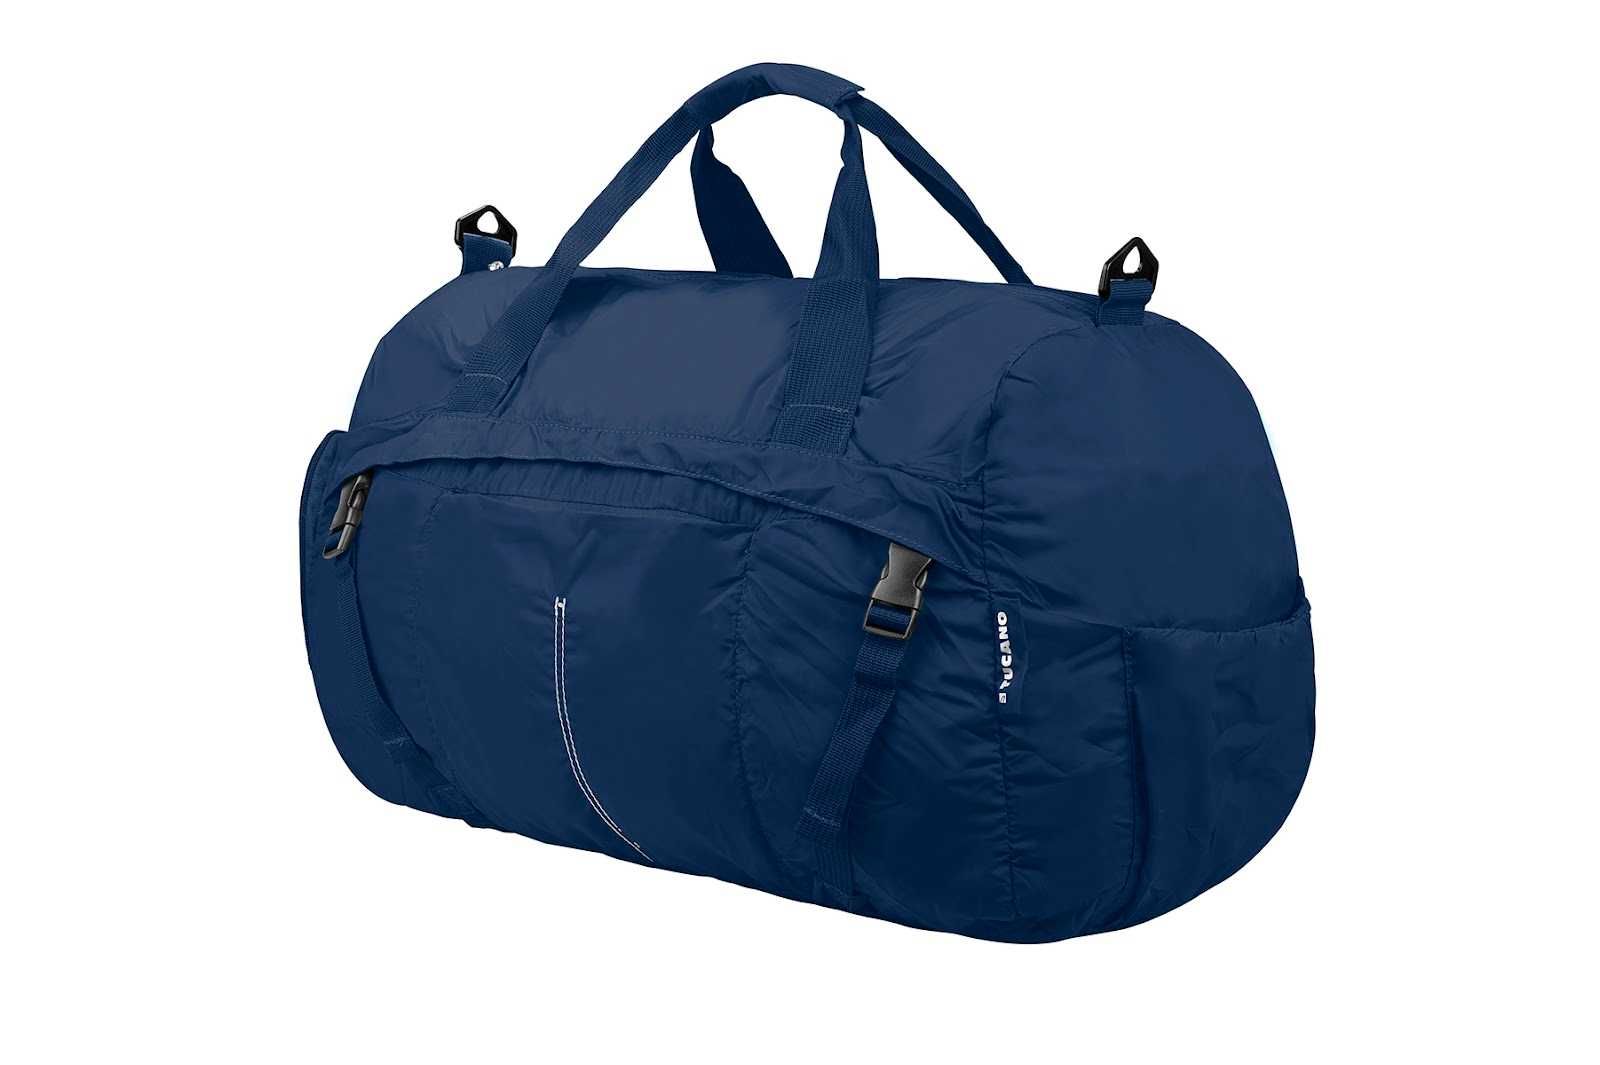 Розкладна легка дорожня сумка Tucano Compatto XL Duffle 45L,-20%